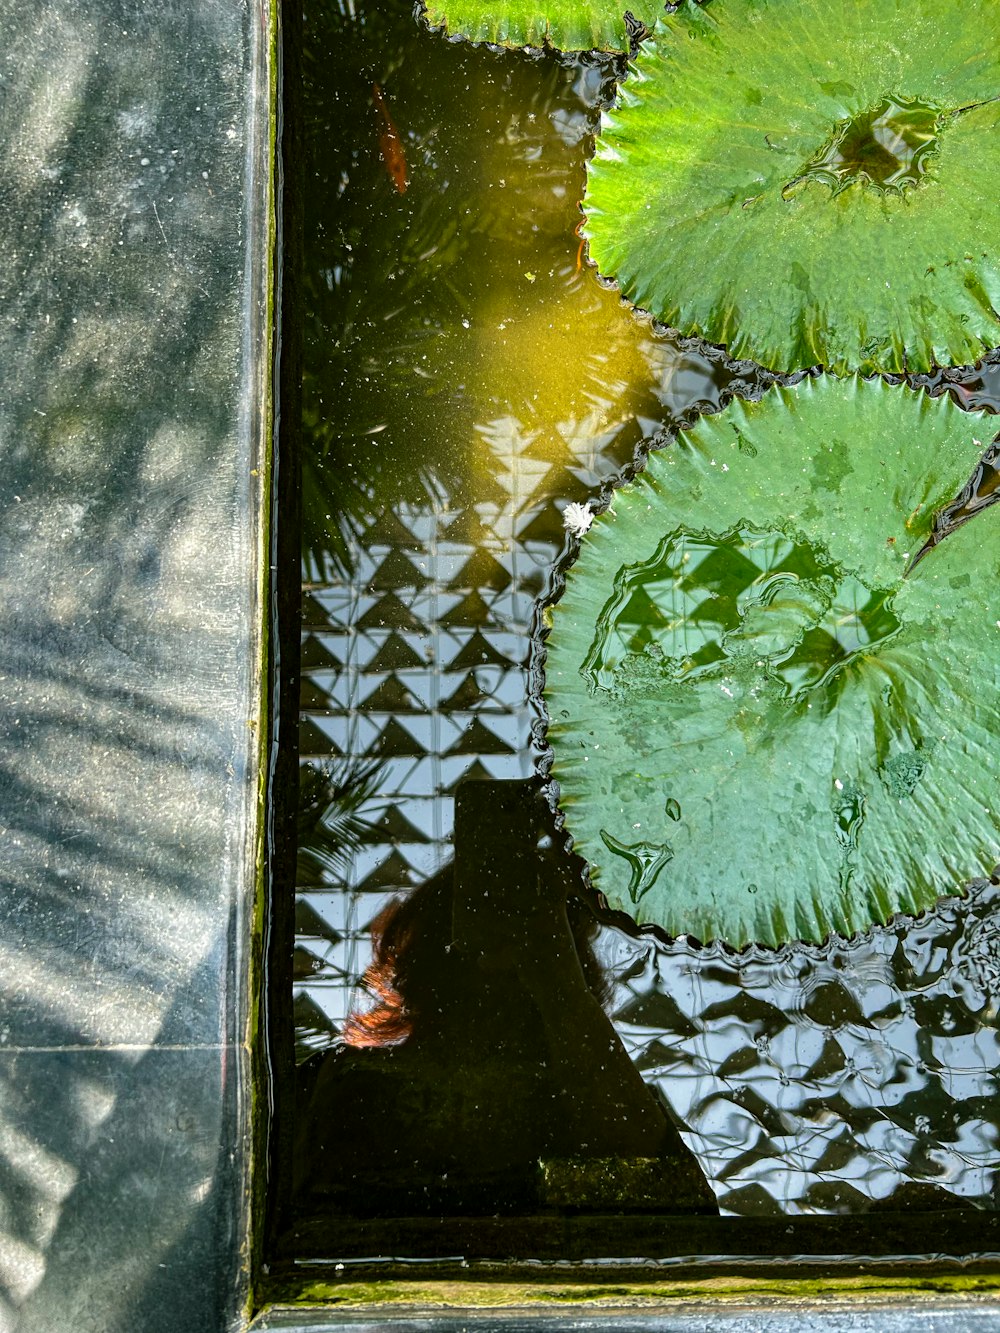 睡蓮と緑の葉でいっぱいの池